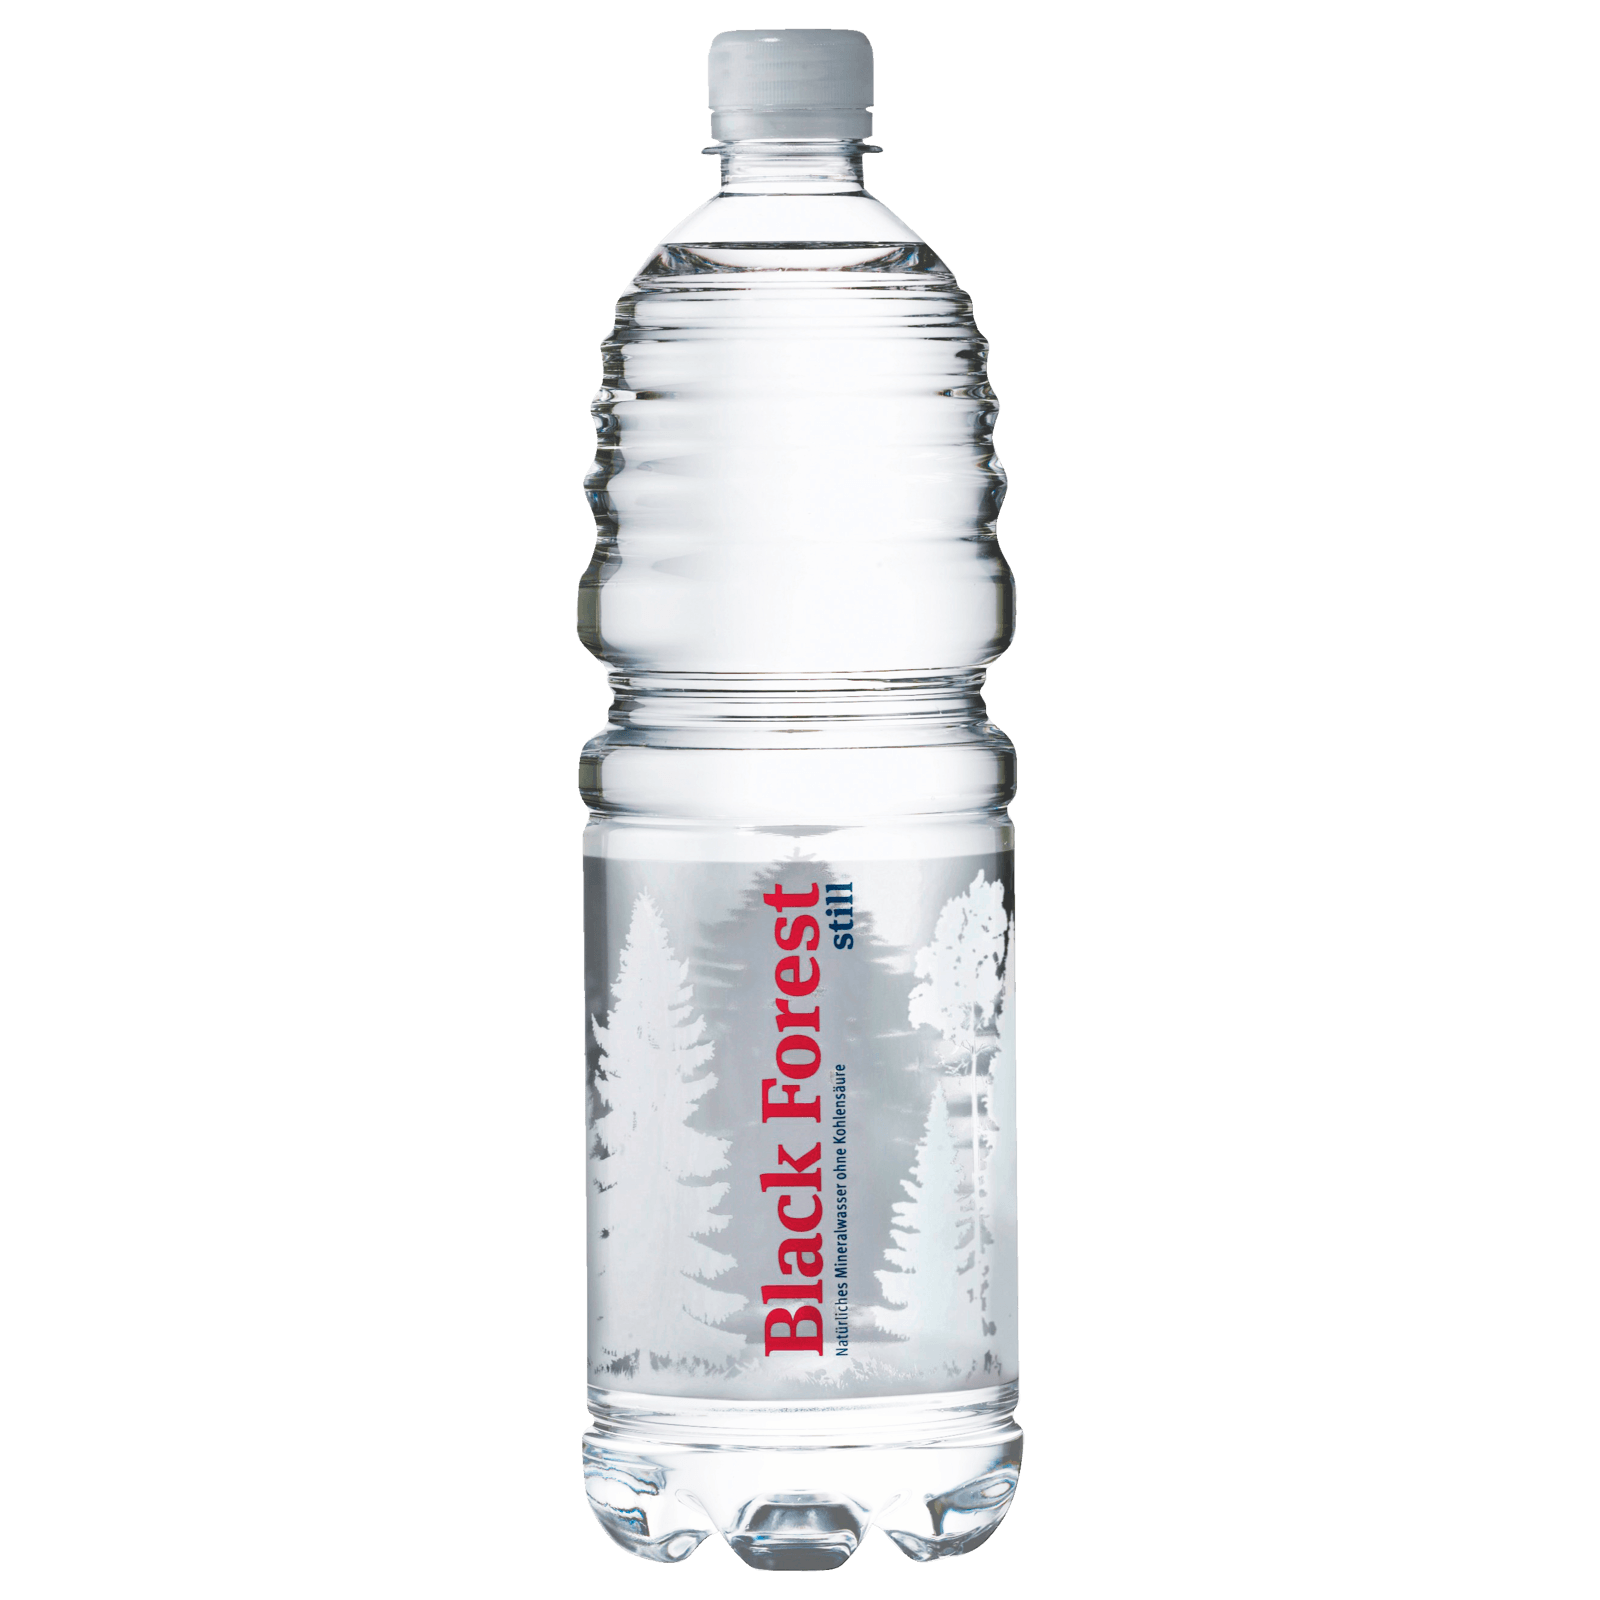 Black Forest Mineralwasser spritzig 12x0,7l für 6,99€ von Rewe